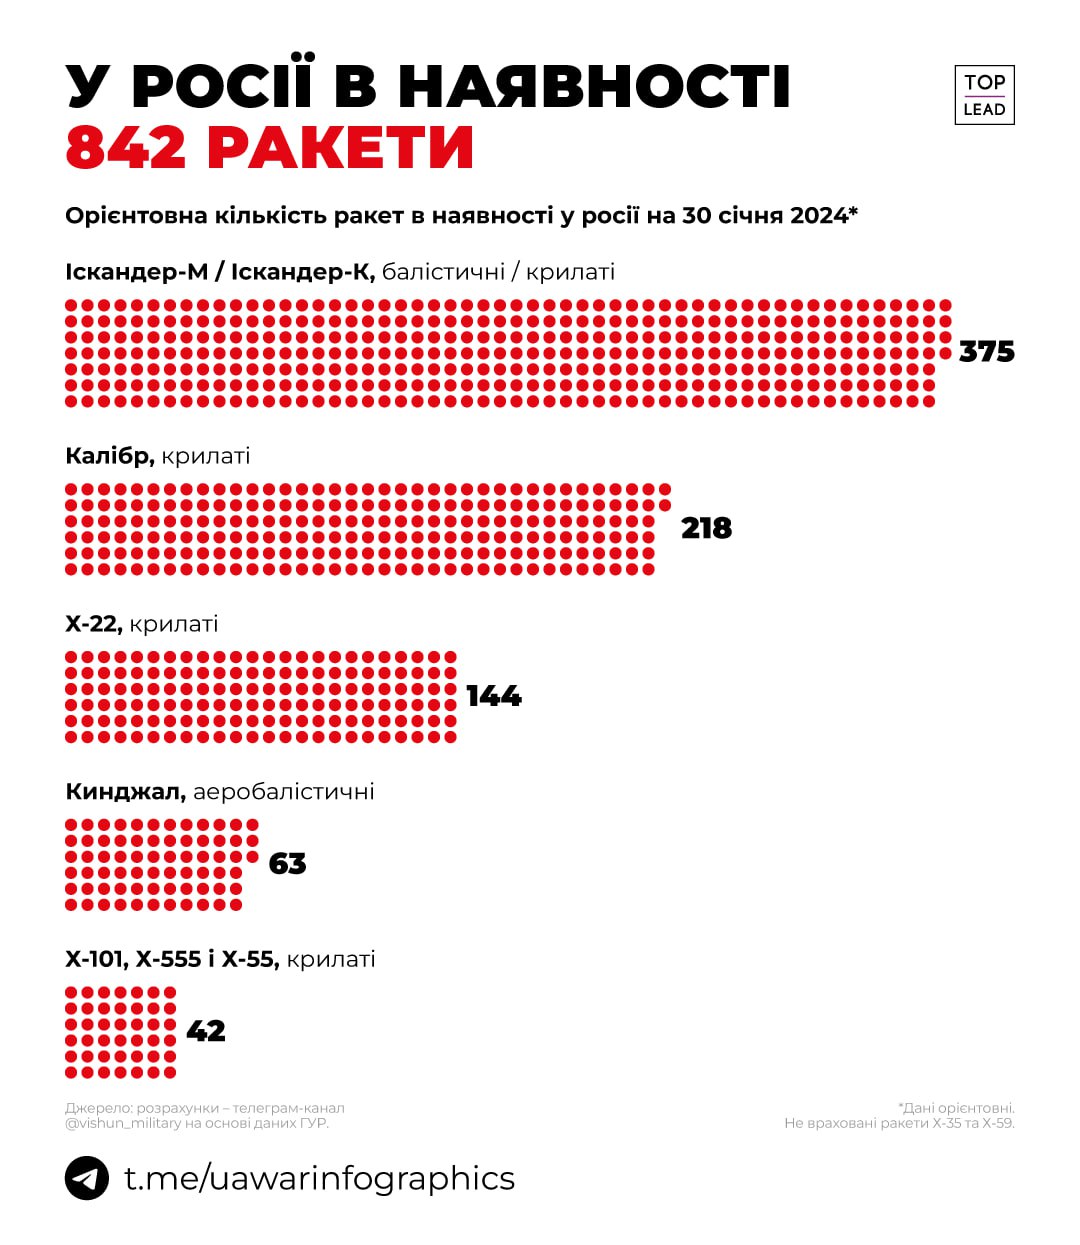 У росії зараз понад 800 ракет, зокрема 63 Кинджали